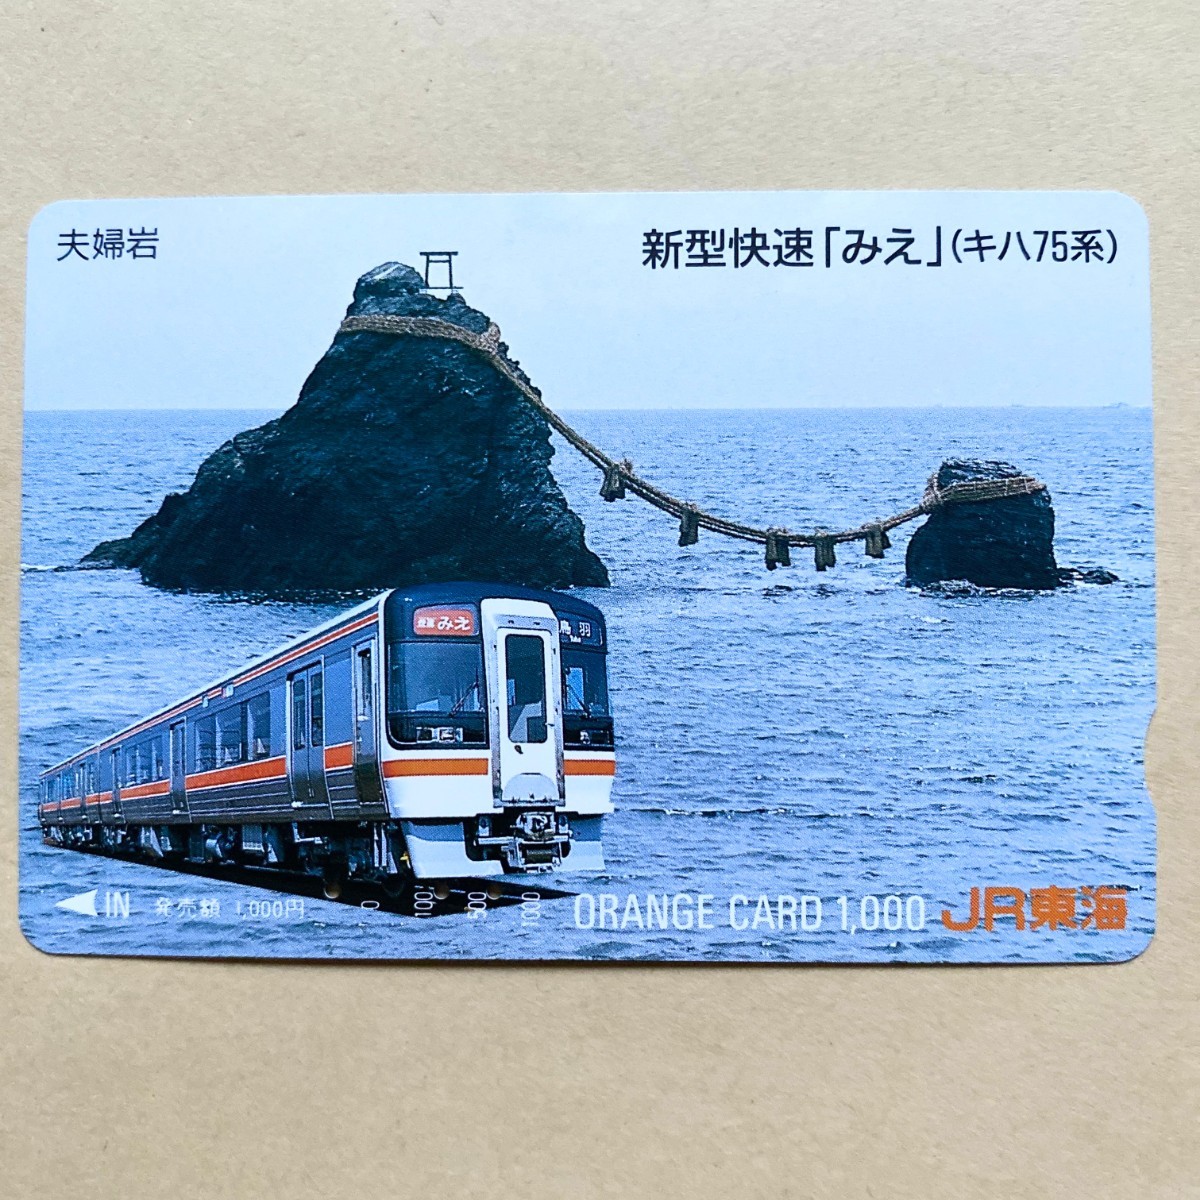 【使用済】 オレンジカード JR東海 新型快速「みえ」(キハ75系) 夫婦岩_画像1